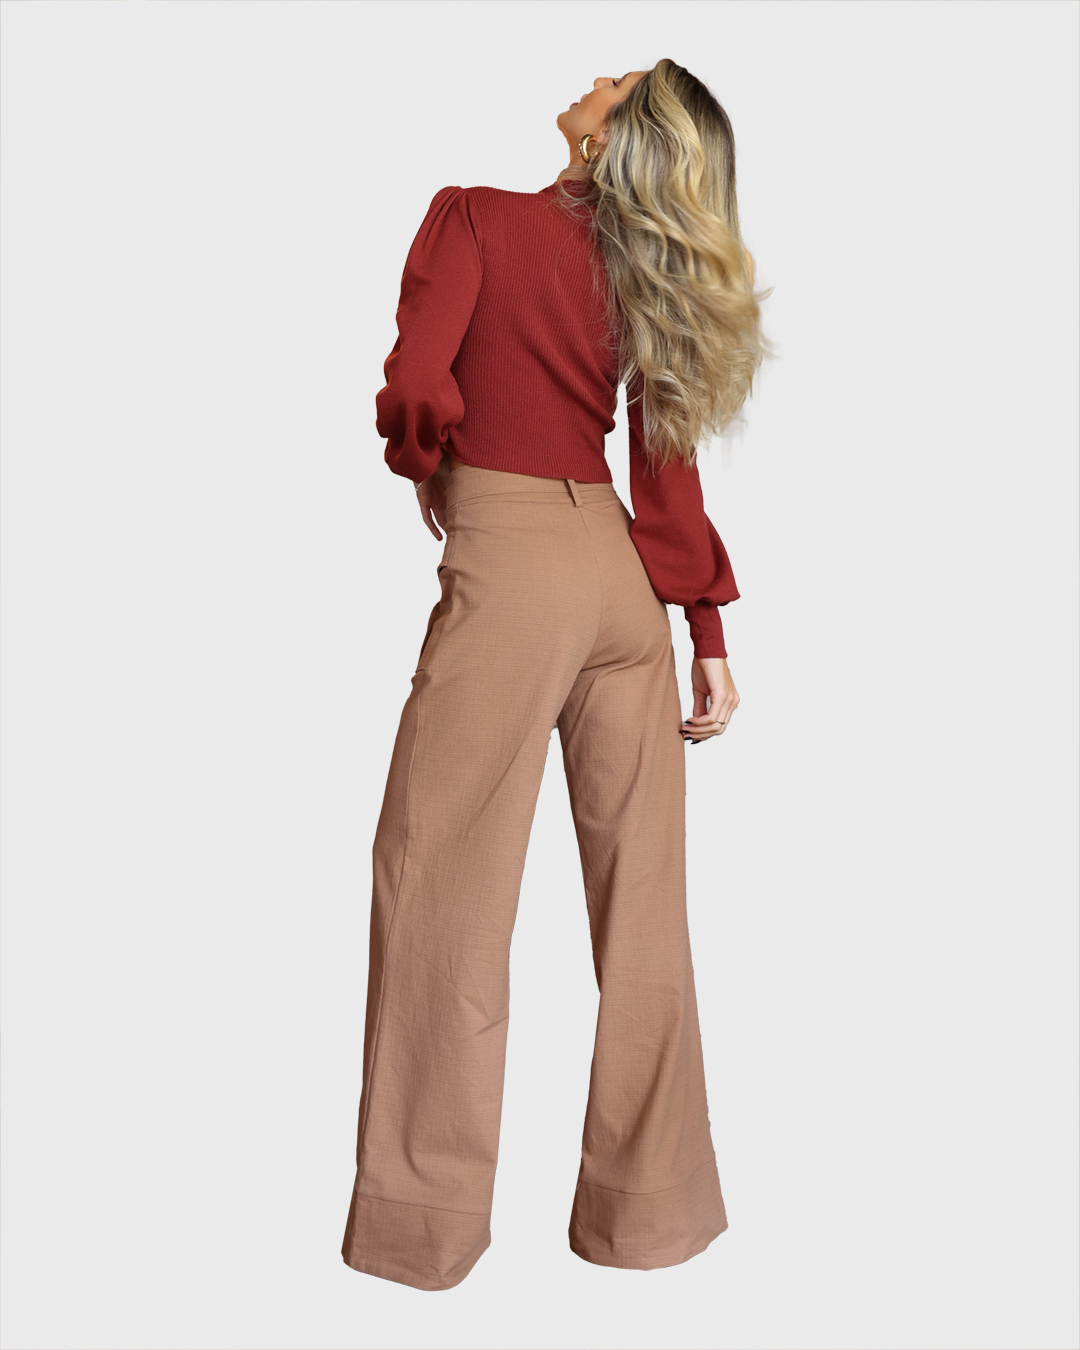 Dot Clothing - Pants Dot Clothing Pantalona with Brown Pocket - 1988MARROM